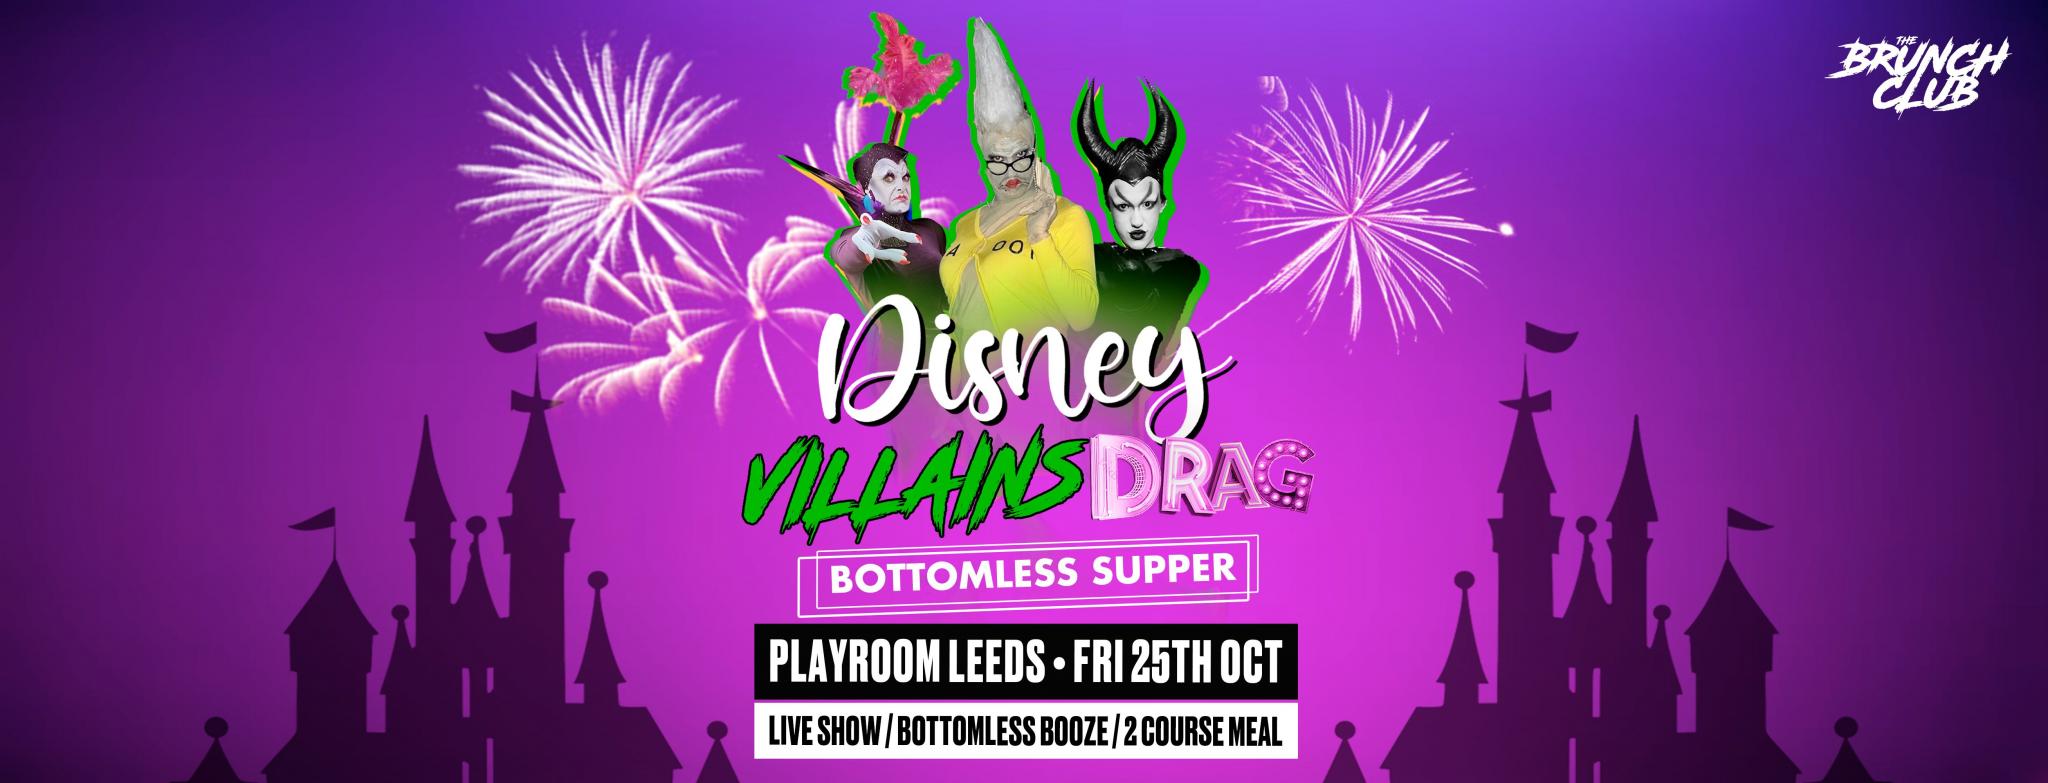 Disney Villains Drag Bottomless Supper - Leeds